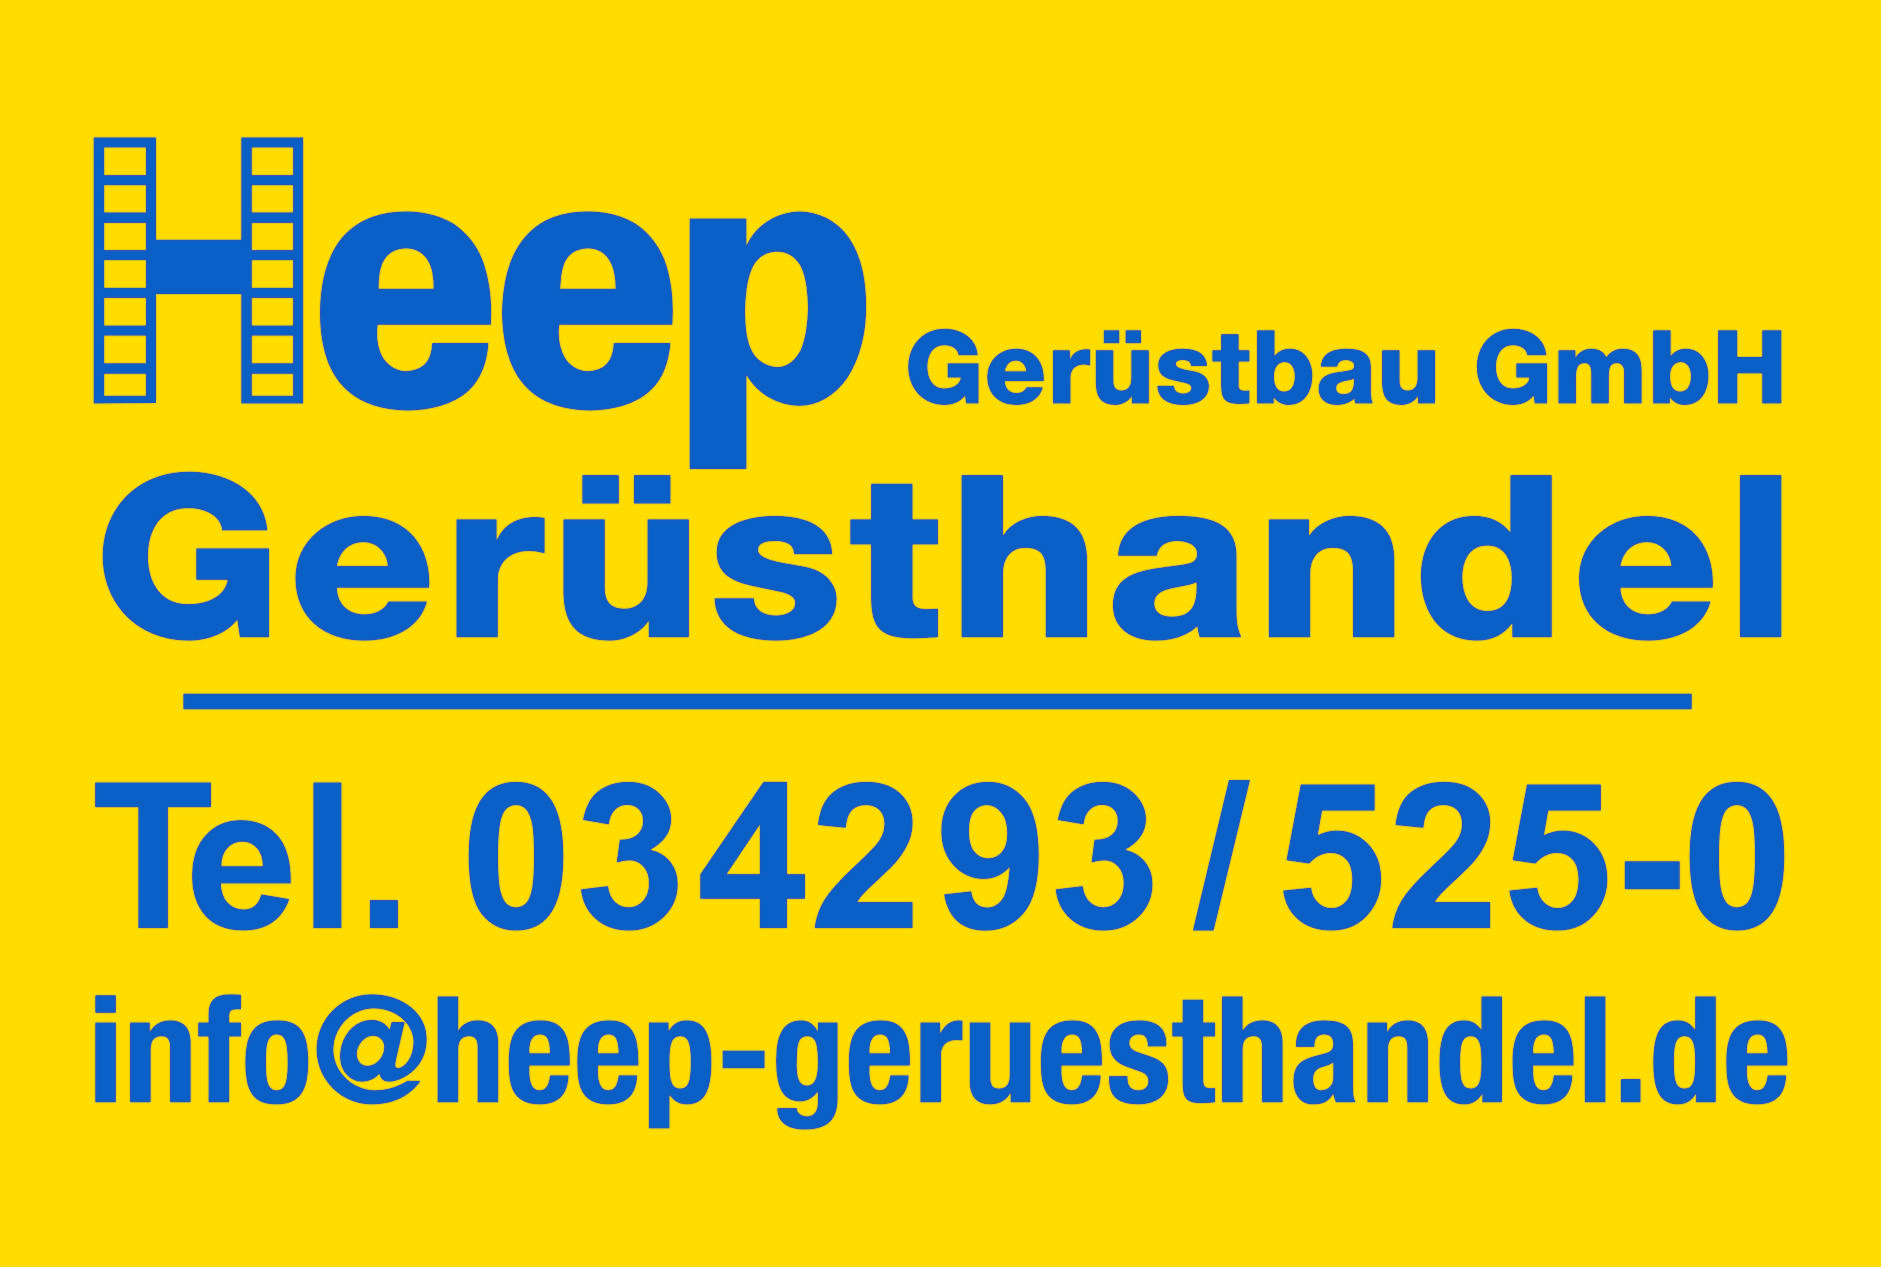 (c) Heep-geruesthandel.de